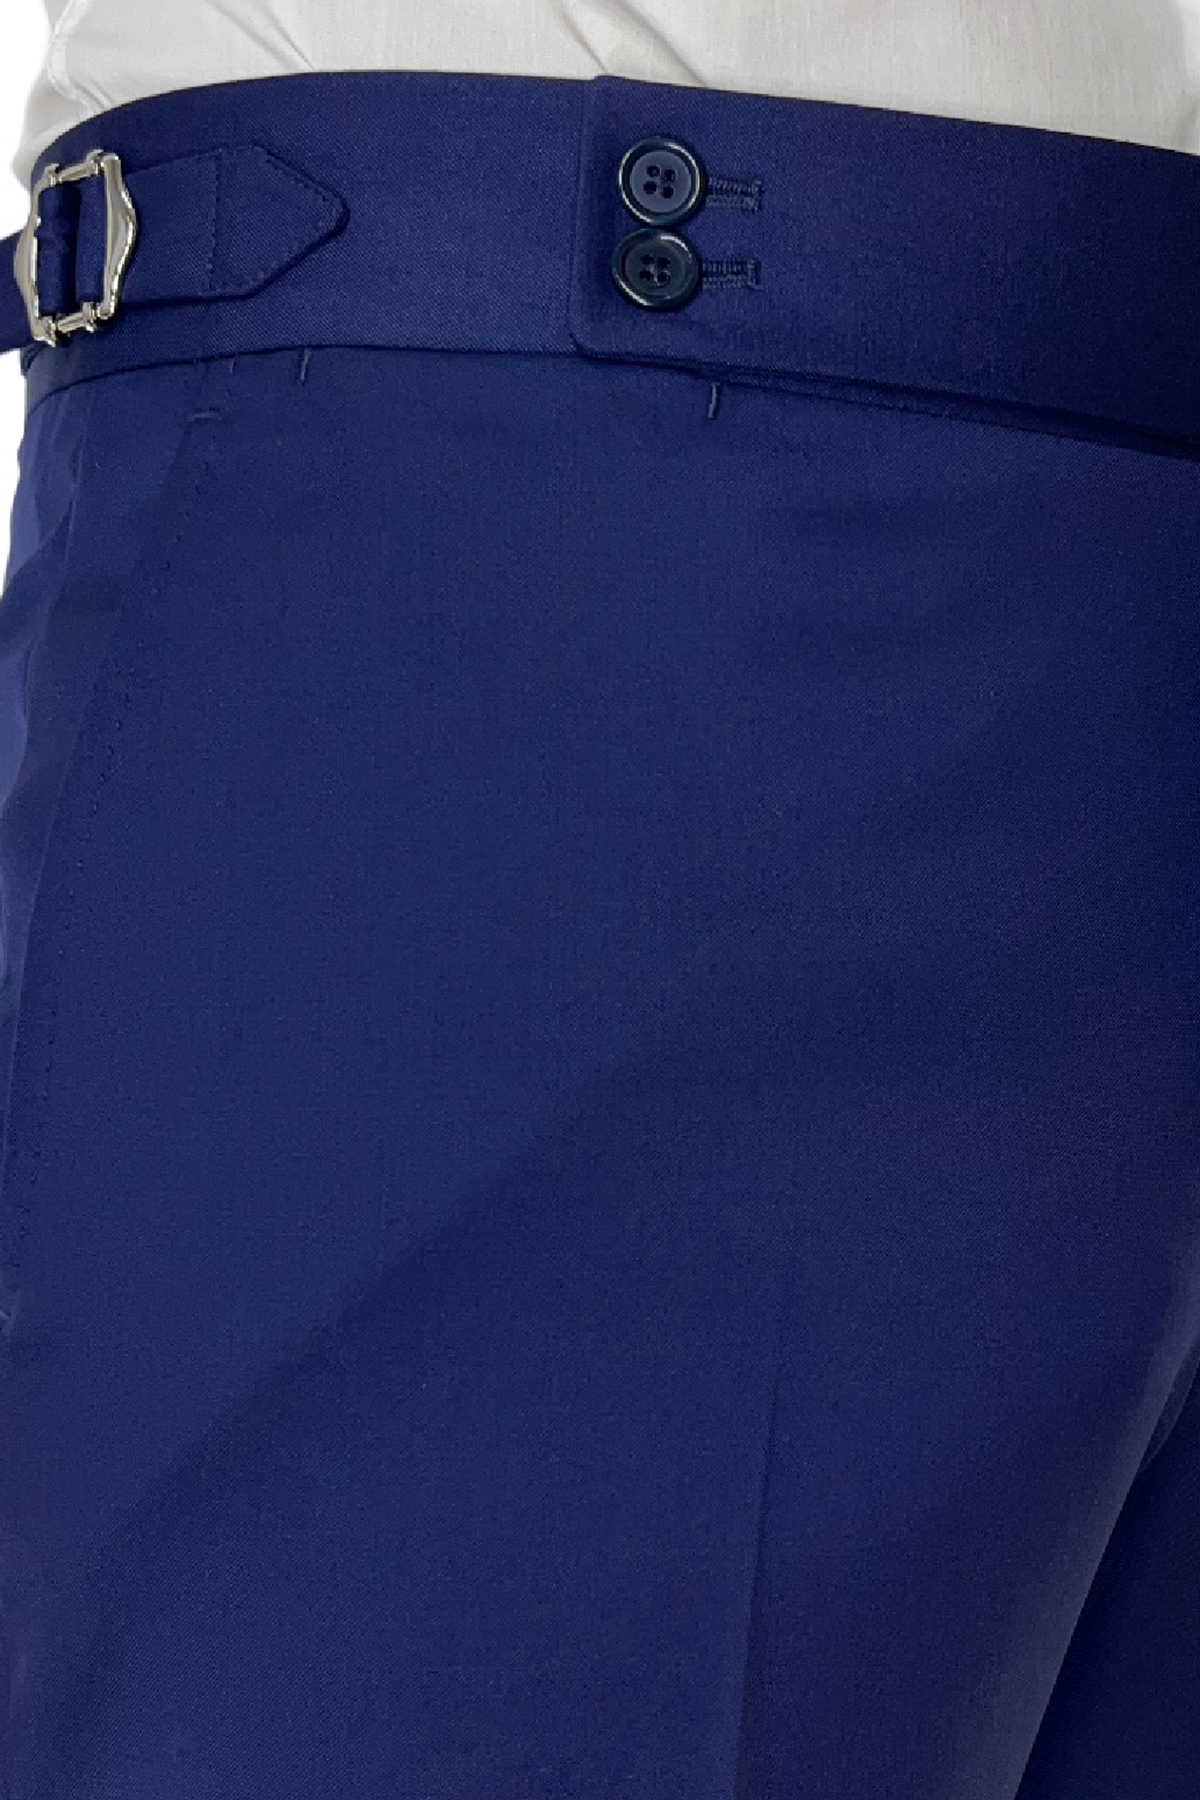 Pantalone uomo royal blu vita alta tasca america in fresco lana 100% Vitale Barberis Canonico fibbie laterali e risvolto 4cm